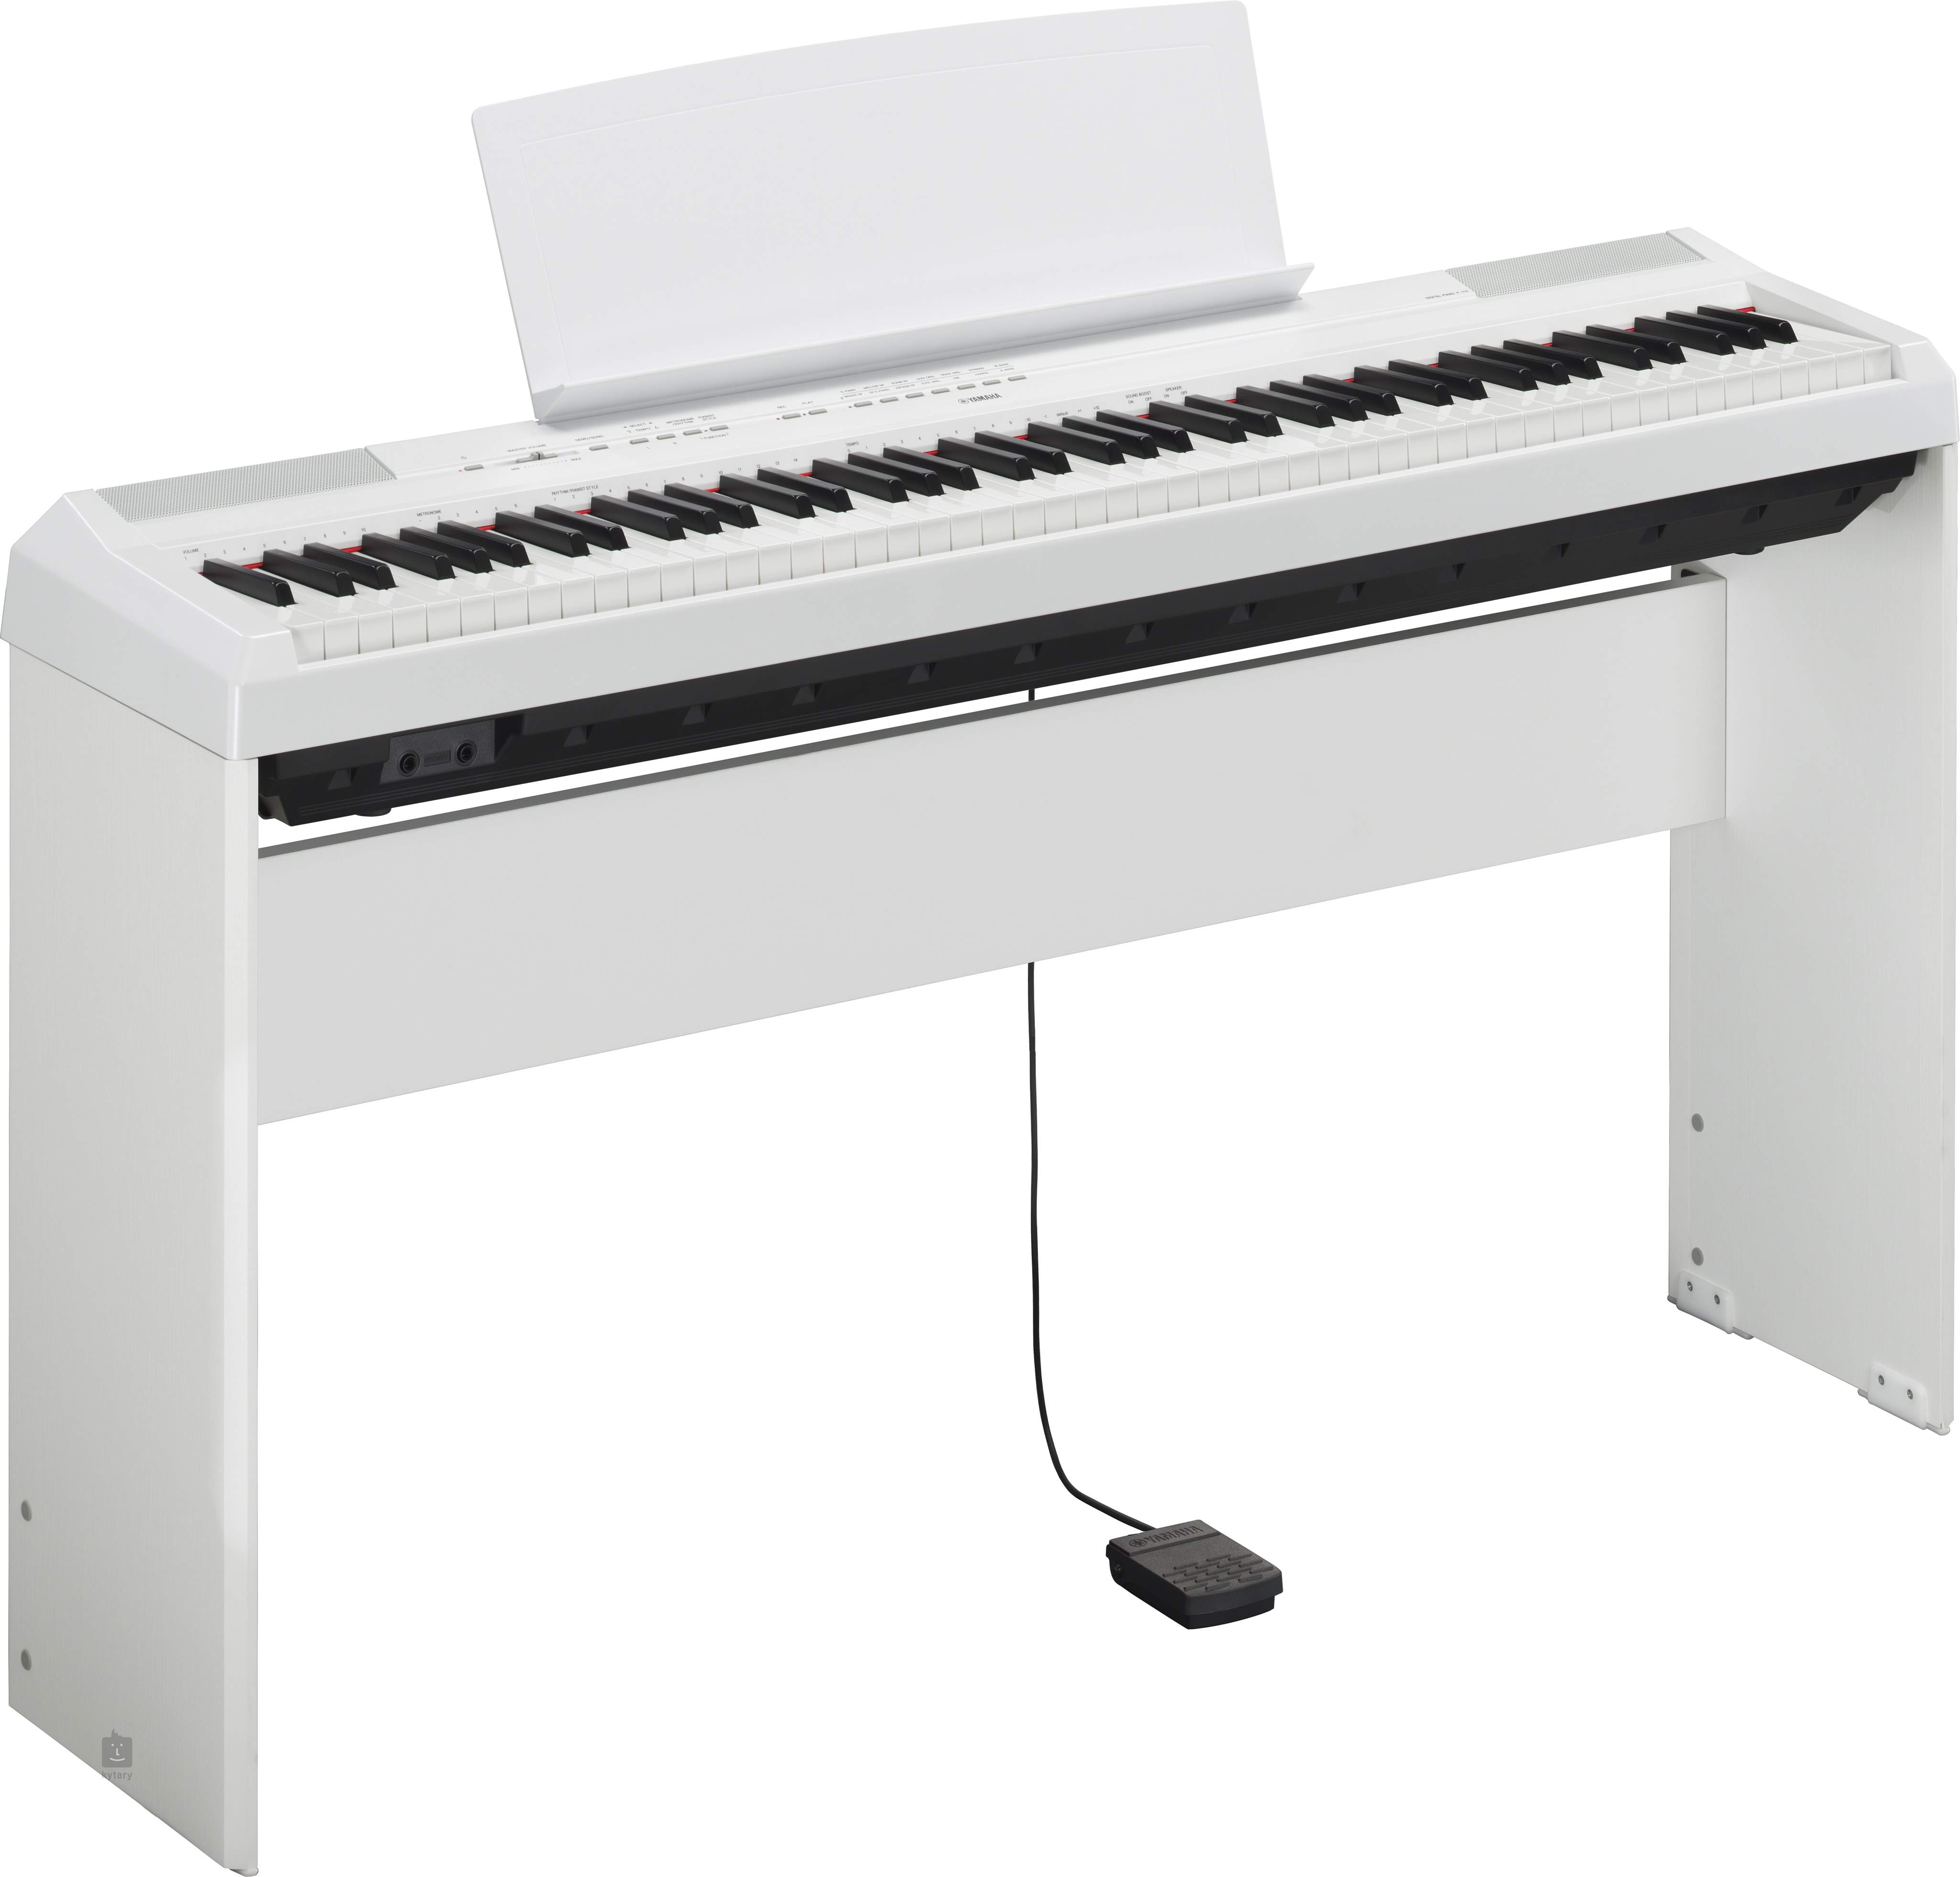 Piano numérique portable Yamaha P-121